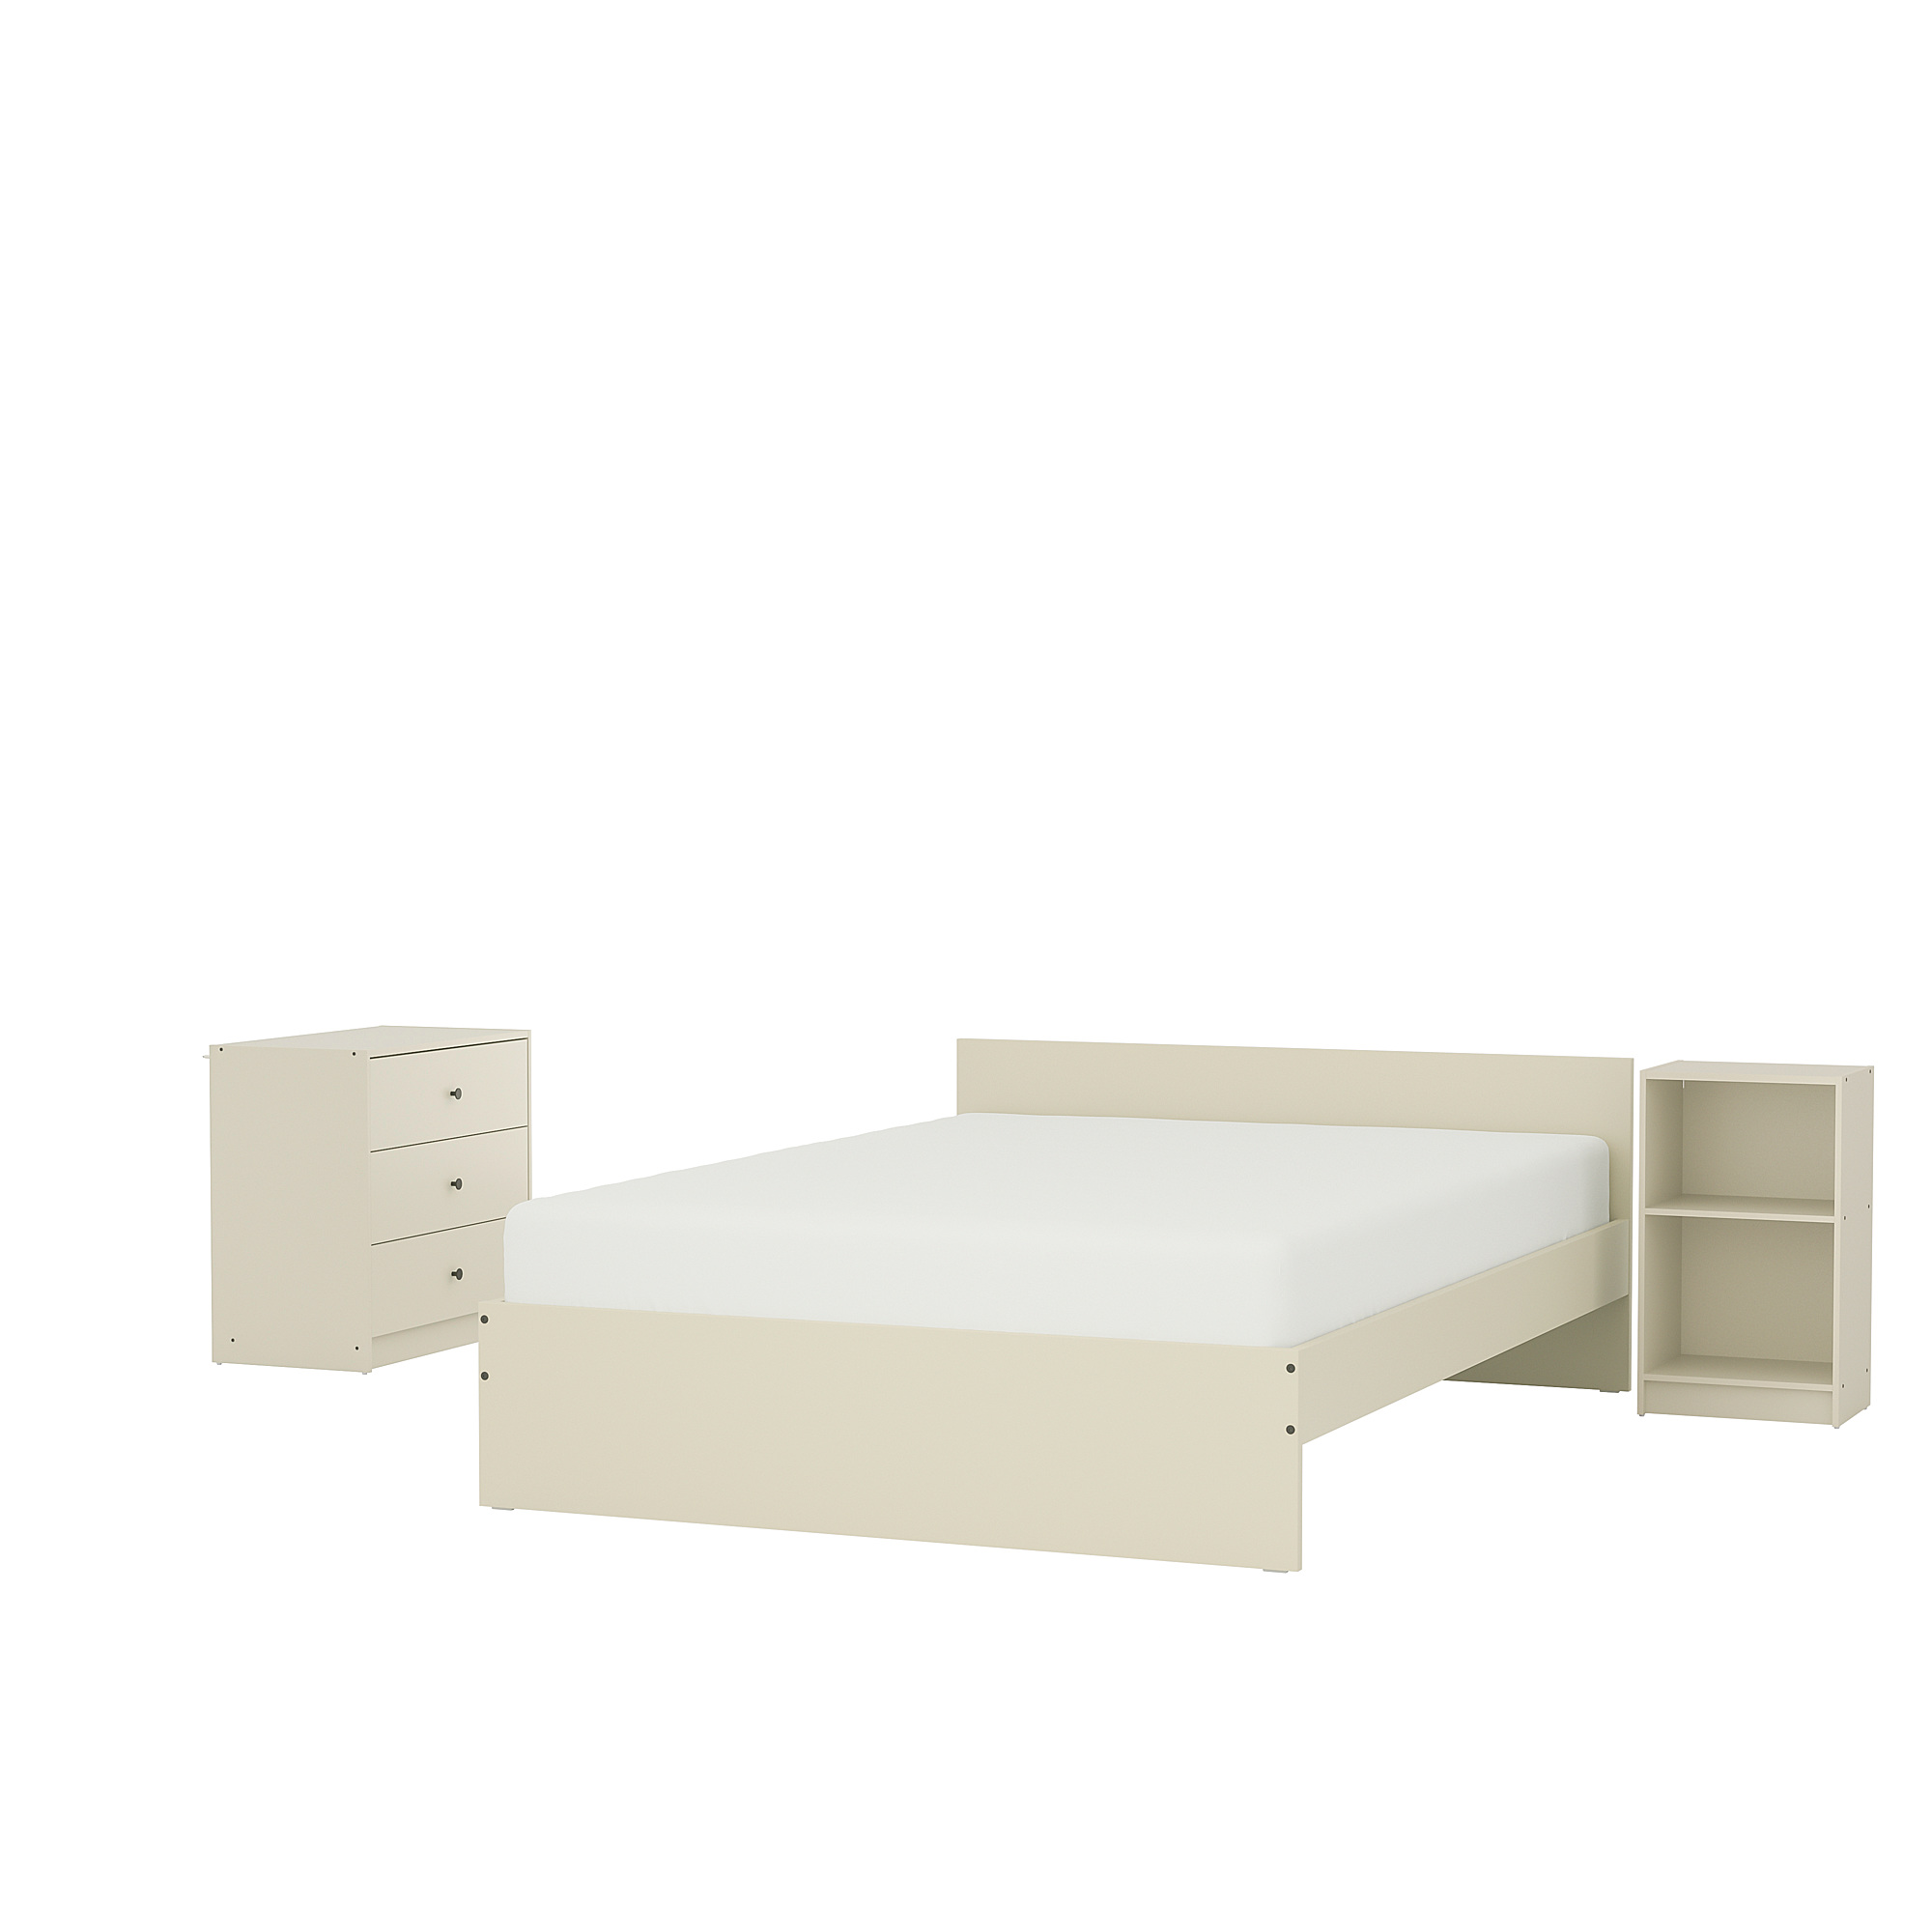 GURSKEN bedroom furniture, set of 3